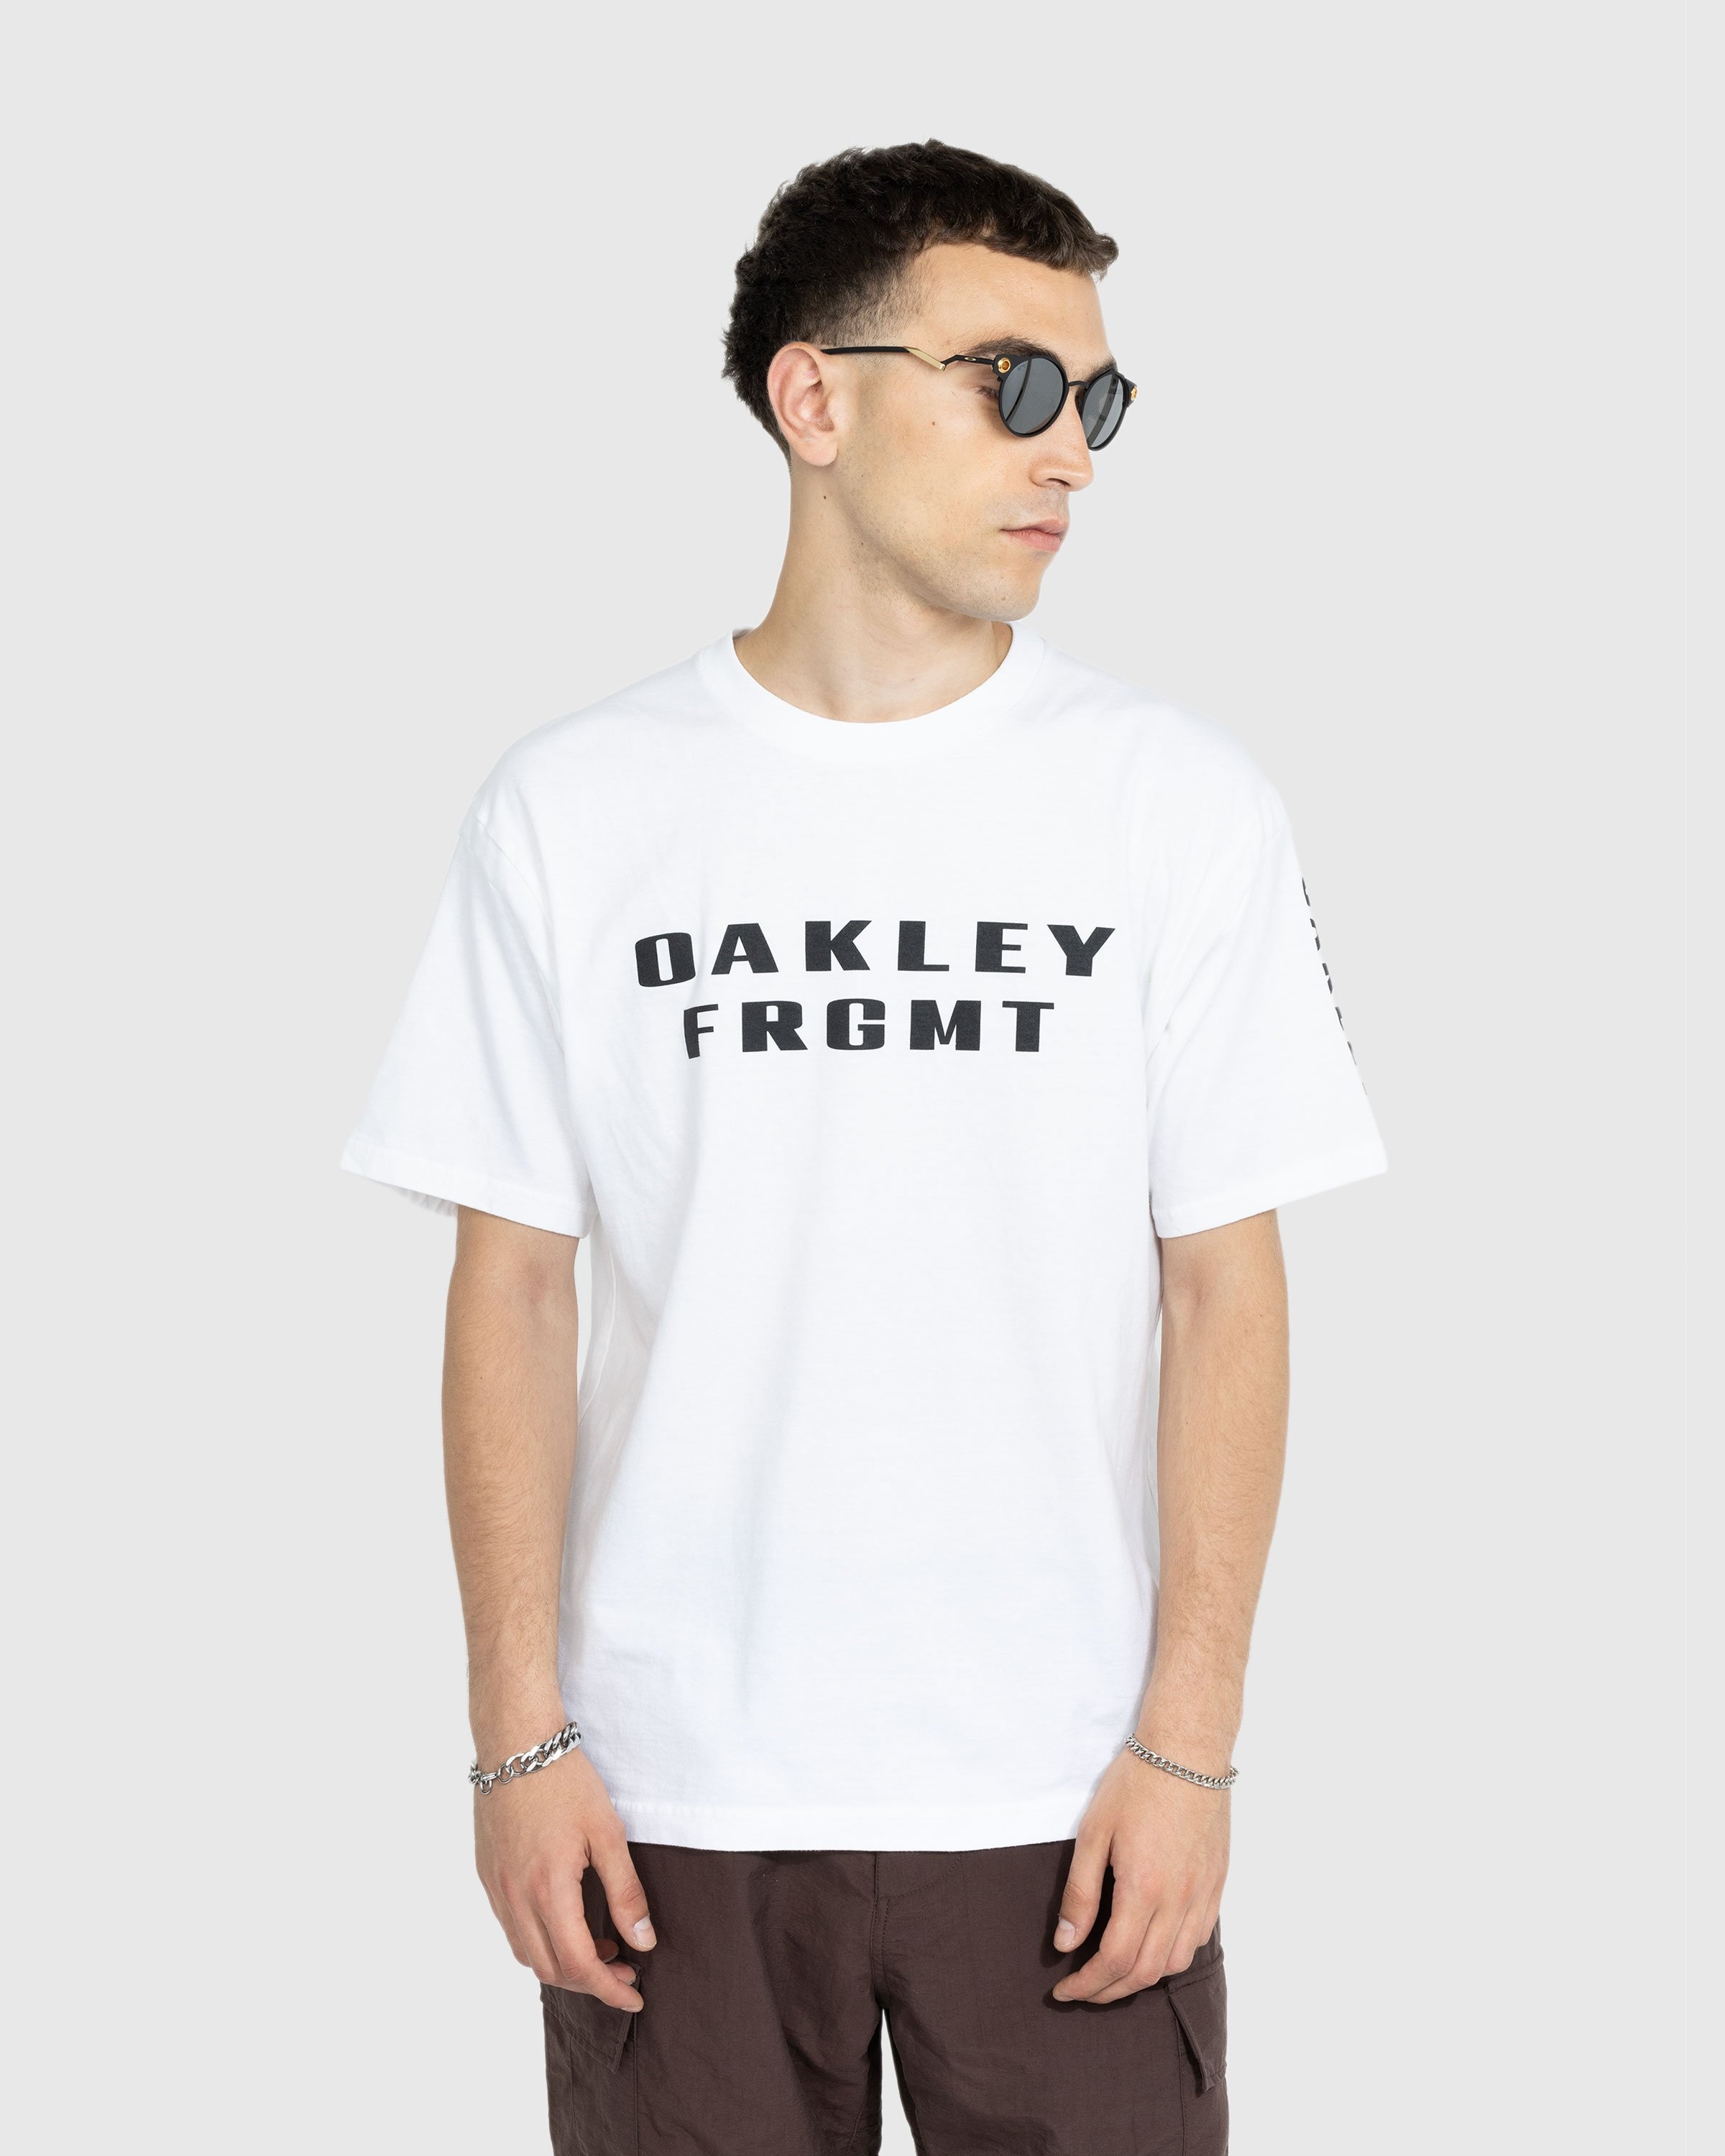 Oakley x Kylian Mbappé – Shop KM Highsnobiety Deadbolt 